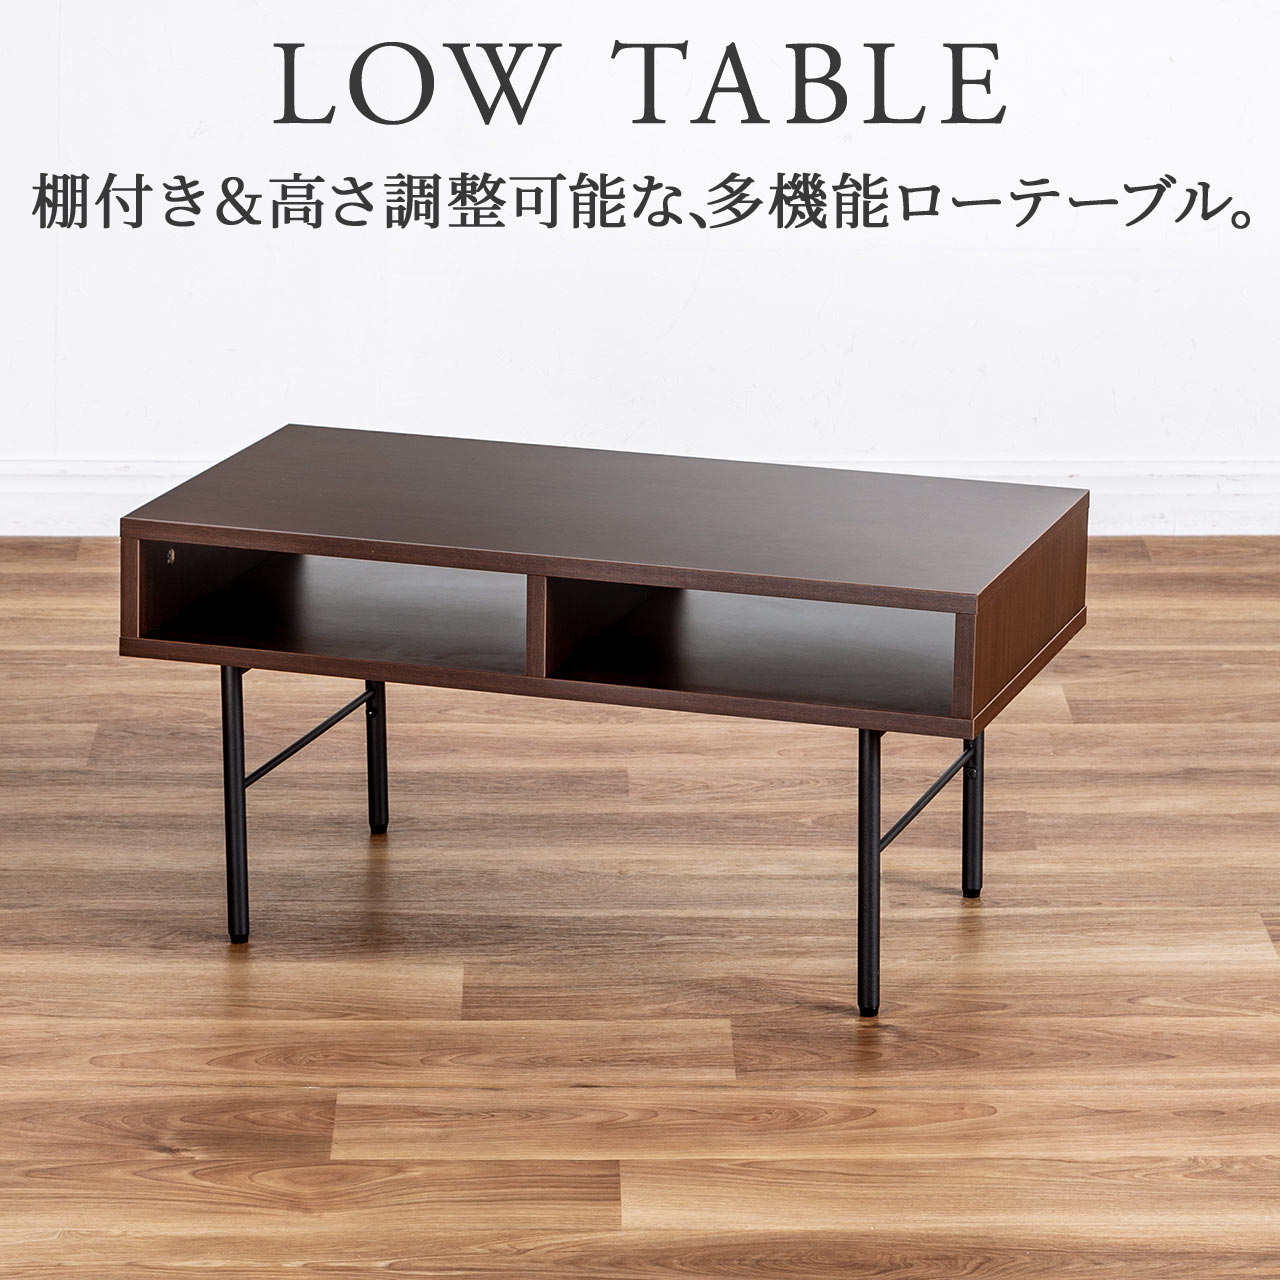 新品日本製センターテーブル ローテーブル ローデスク テーブル 北欧 ナチュラル リビング ローテーブル